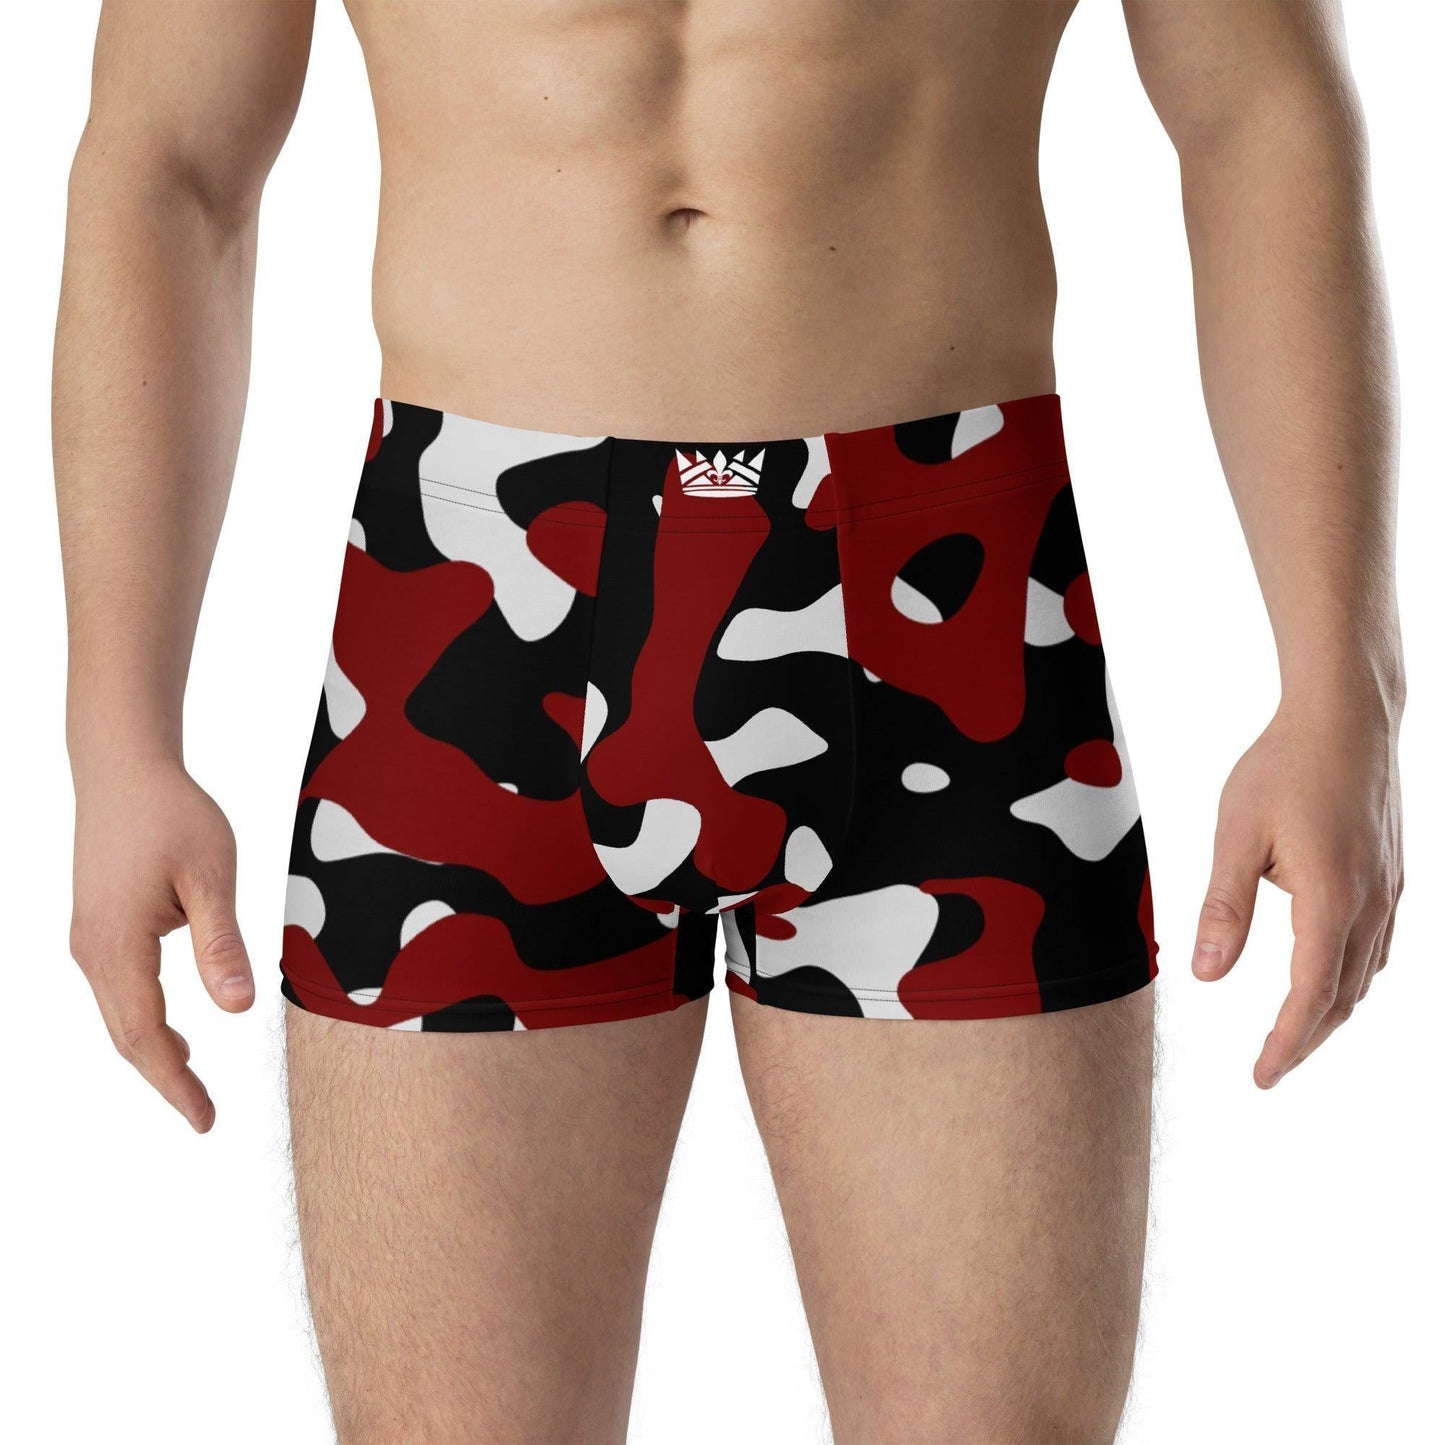 Schwarz Rot Weiss Camouflage Royal Underwear Boxershorts -- Schwarz Rot Weiss Camouflage Royal Underwear Boxershorts - undefined Boxershorts | JLR Design